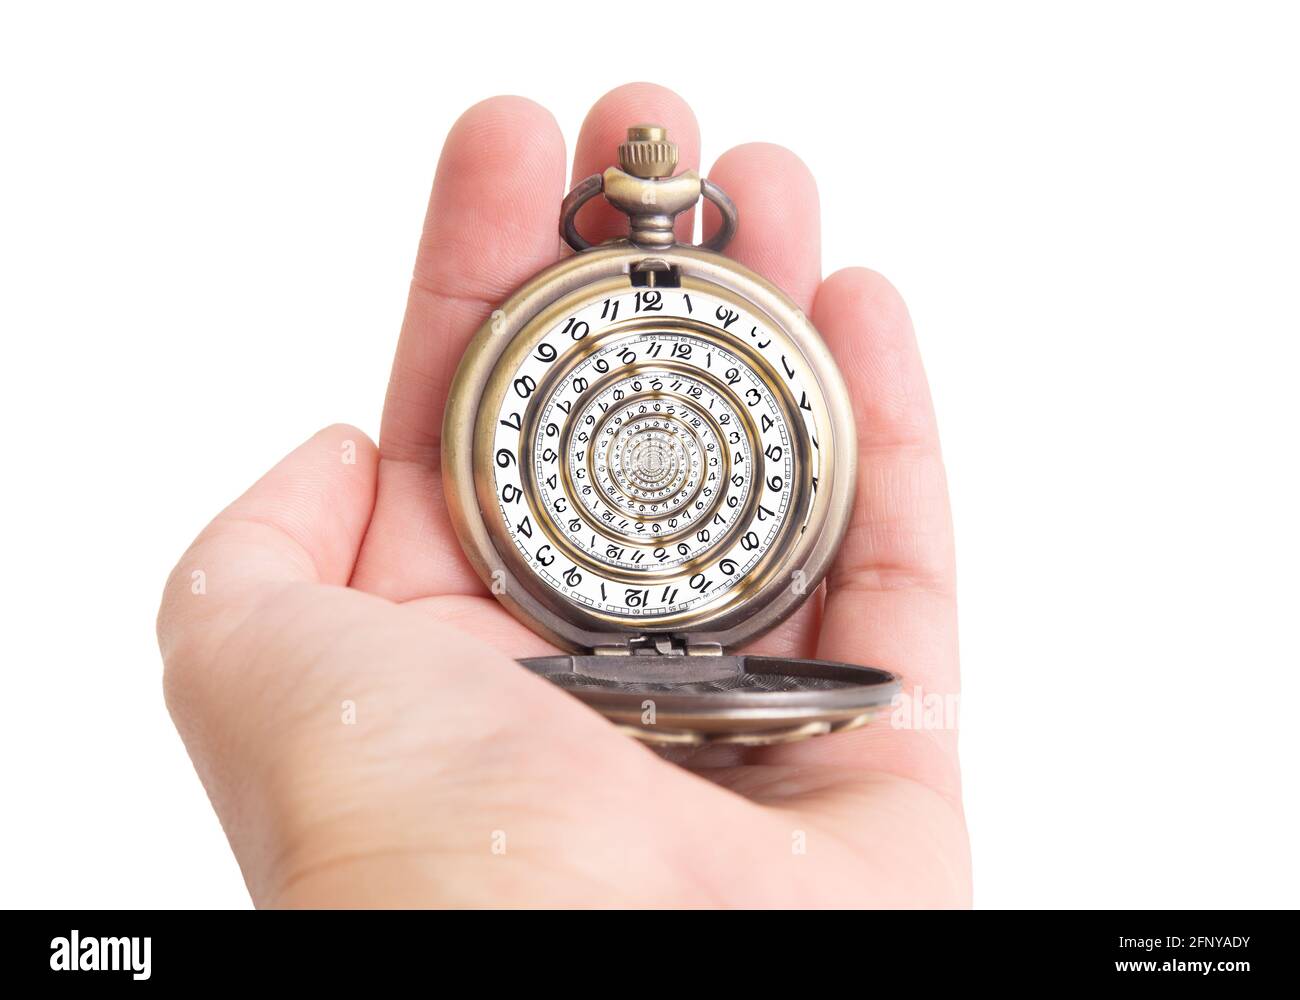 Main humaine tenant une montre de poche antique avec un cadran de montre tournoyé. Effet Droste, concept de boucle temporelle créative. Banque D'Images